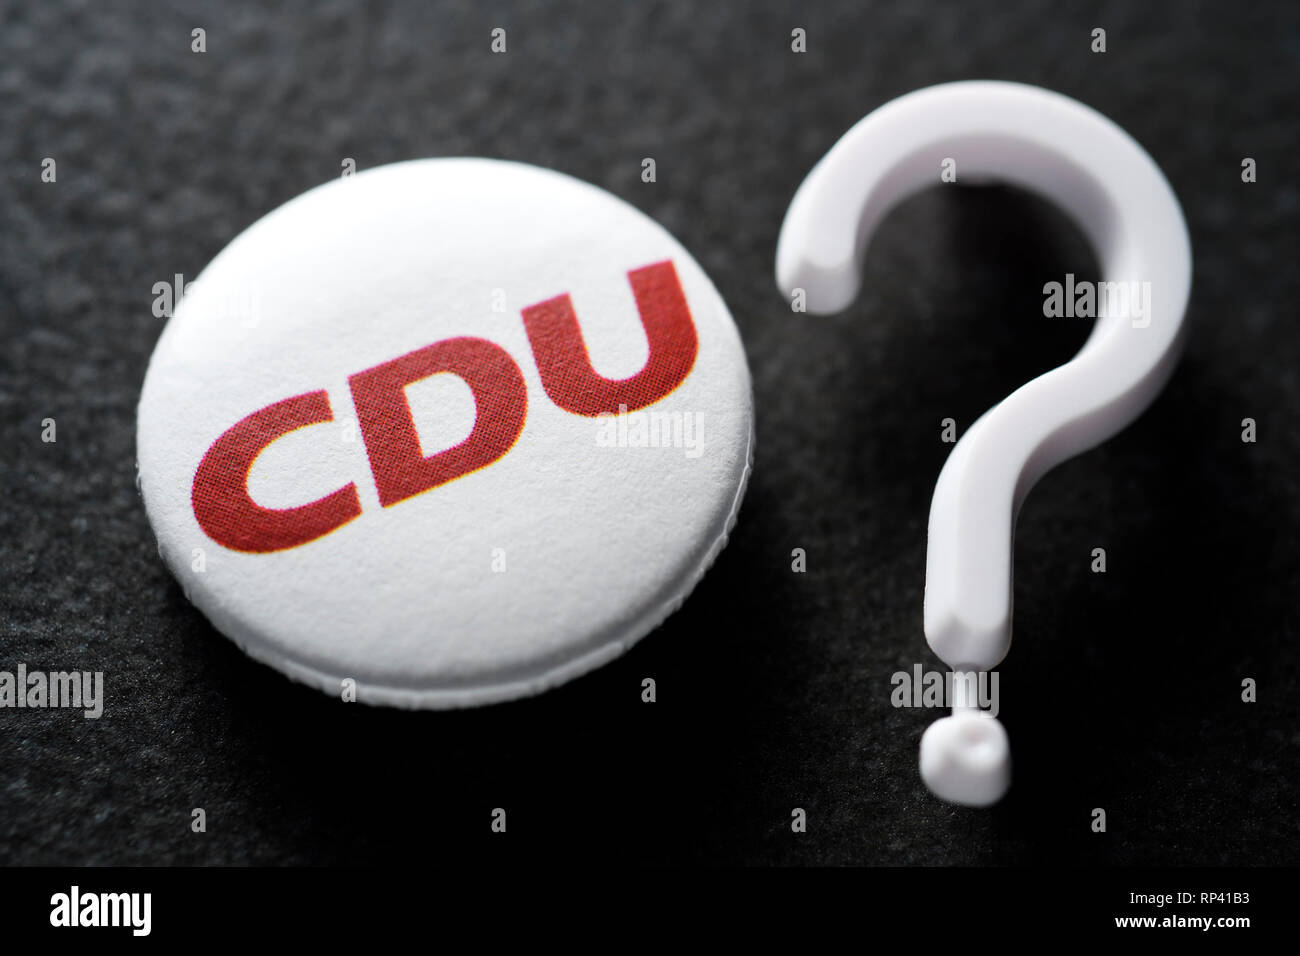 Anstecker of the CDU and question mark, People's Parties in the crisis, Anstecker der CDU und Fragezeichen, Volksparteien in der Krise Stock Photo